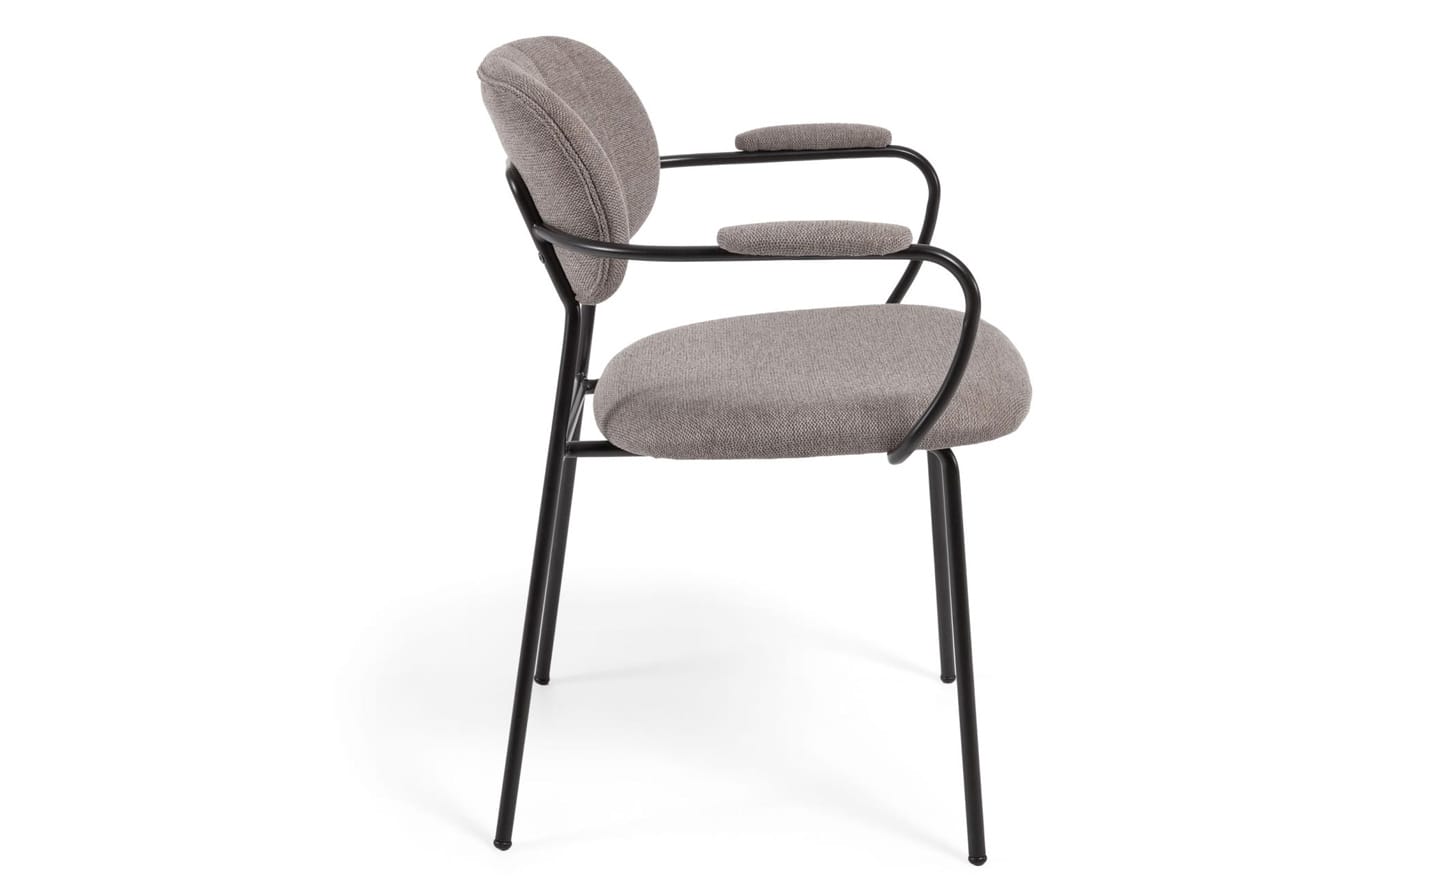 Cadeira Empilhável Auxtina Castanho Claro, com braços em tecido chenille na cor castanho claro. Estrutura de metal com acabamento pintado preto mate para um design elegante e funcional.